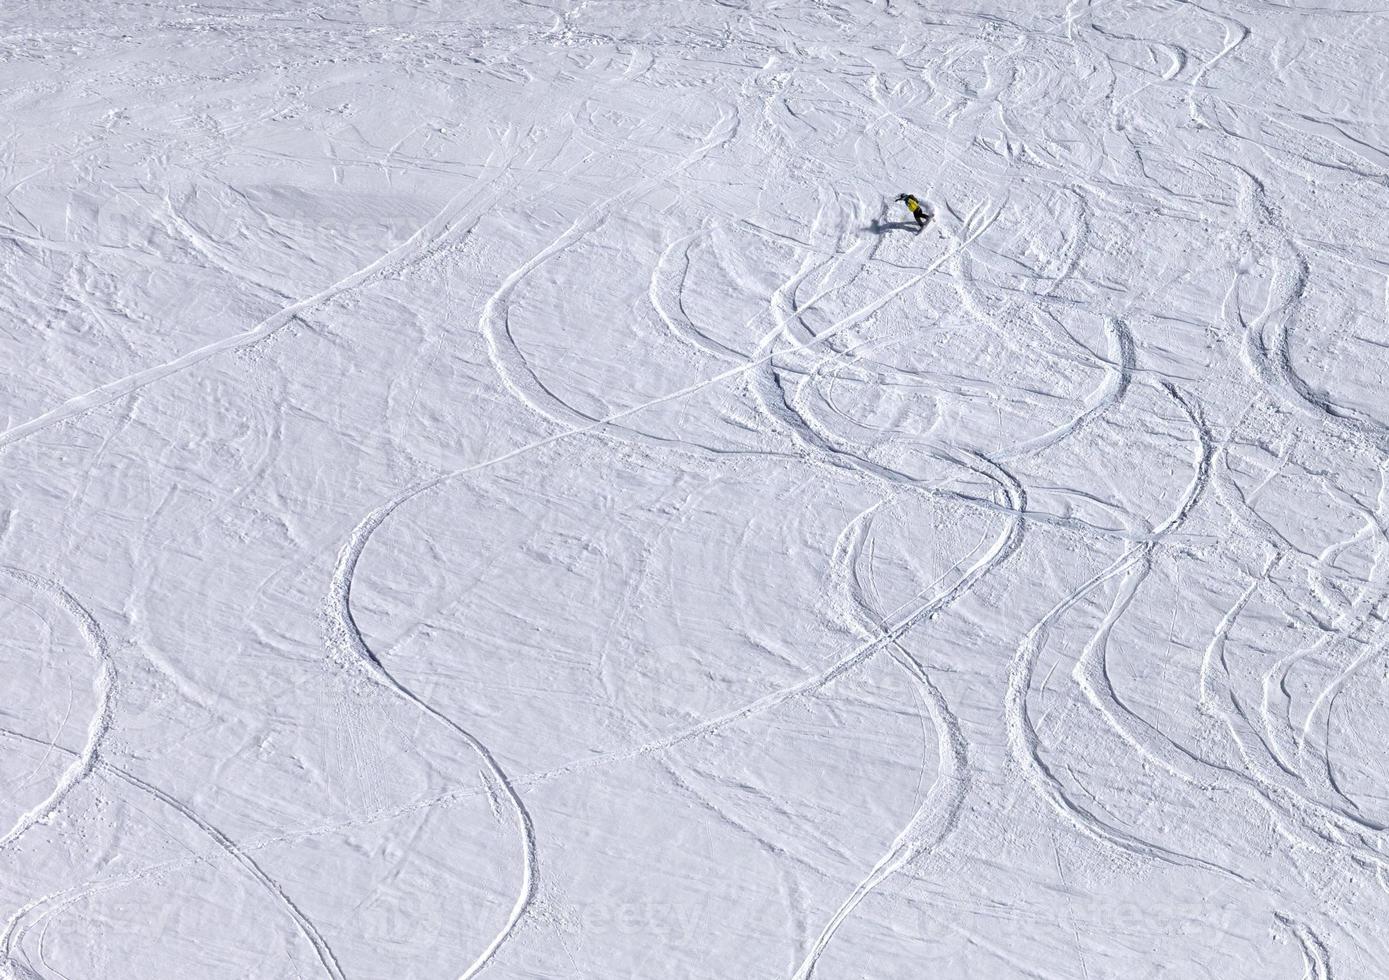 snowboarder bergaf op off-piste helling met pas gevallen sneeuw foto